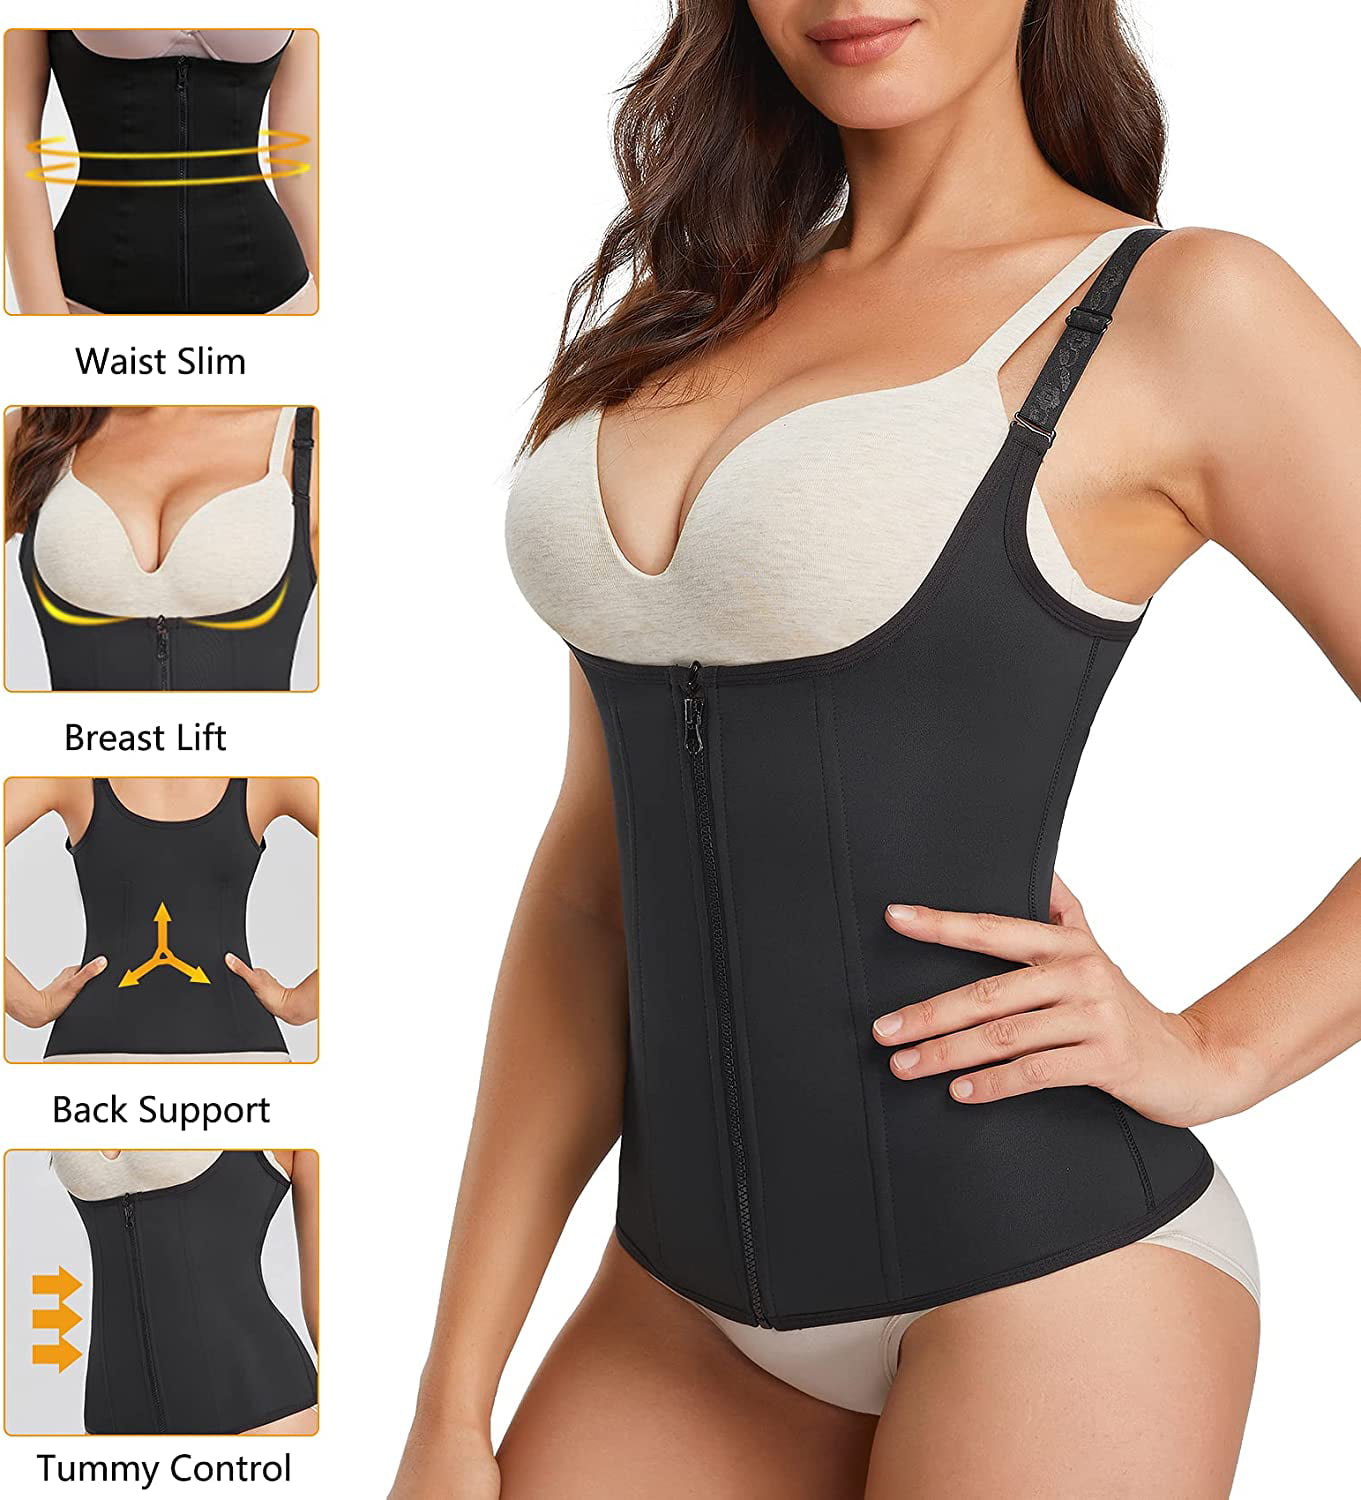 Women Waist Trainer Vest Criss Cross Thin Open Bust Shapewear Tank Top  Tummy Control Body Shaper Underwear Only $6.73 PatPat US Mobile